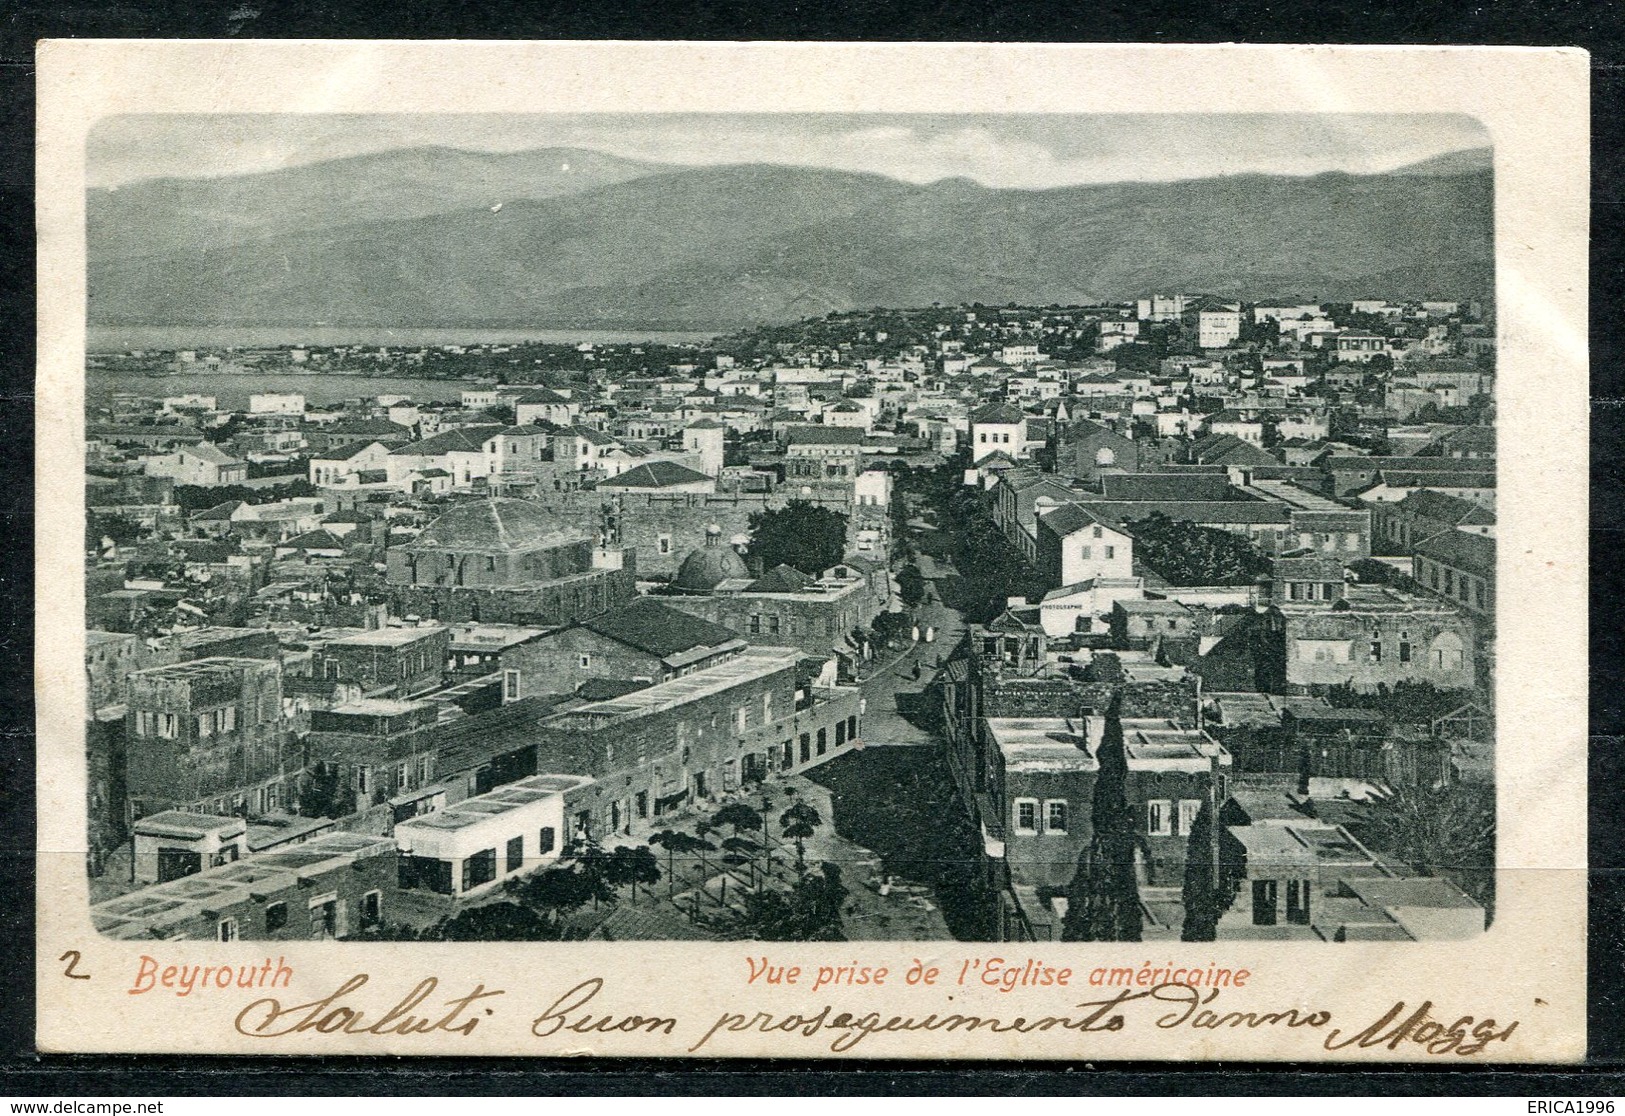 CARTOLINA CV2395 LIBANO LIBAN Beyrouth Panorama, 1902, Viaggiata Per L'Italia, Formato Piccolo, Francobollo Asportato, O - Libano